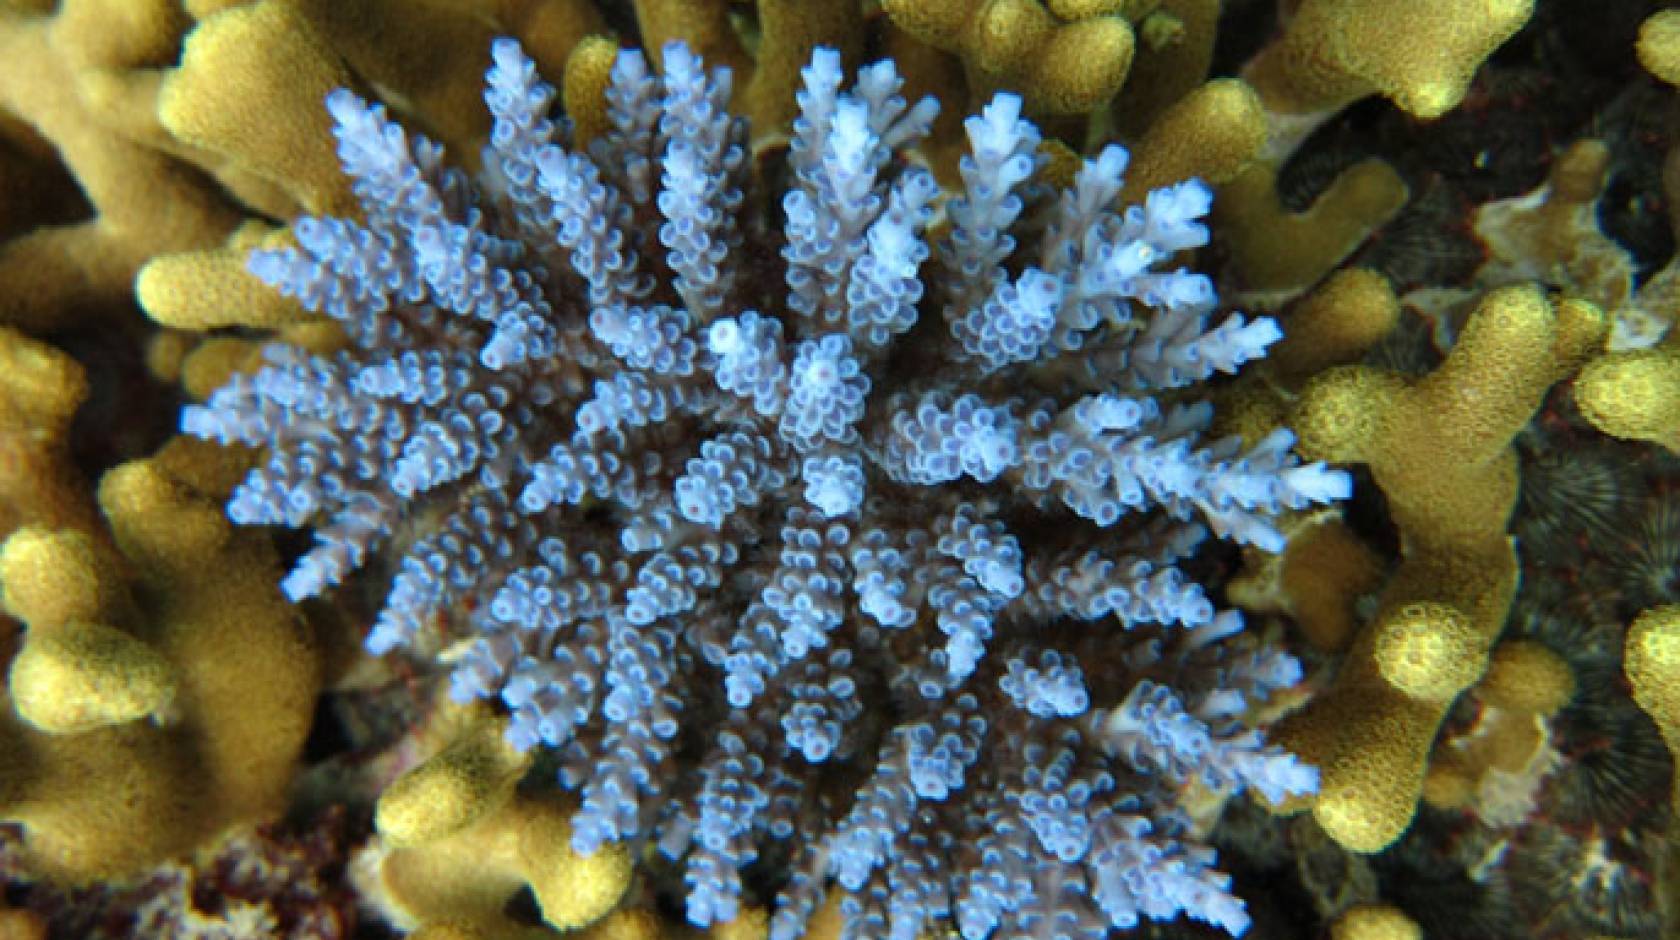 UC Santa Barbara coral